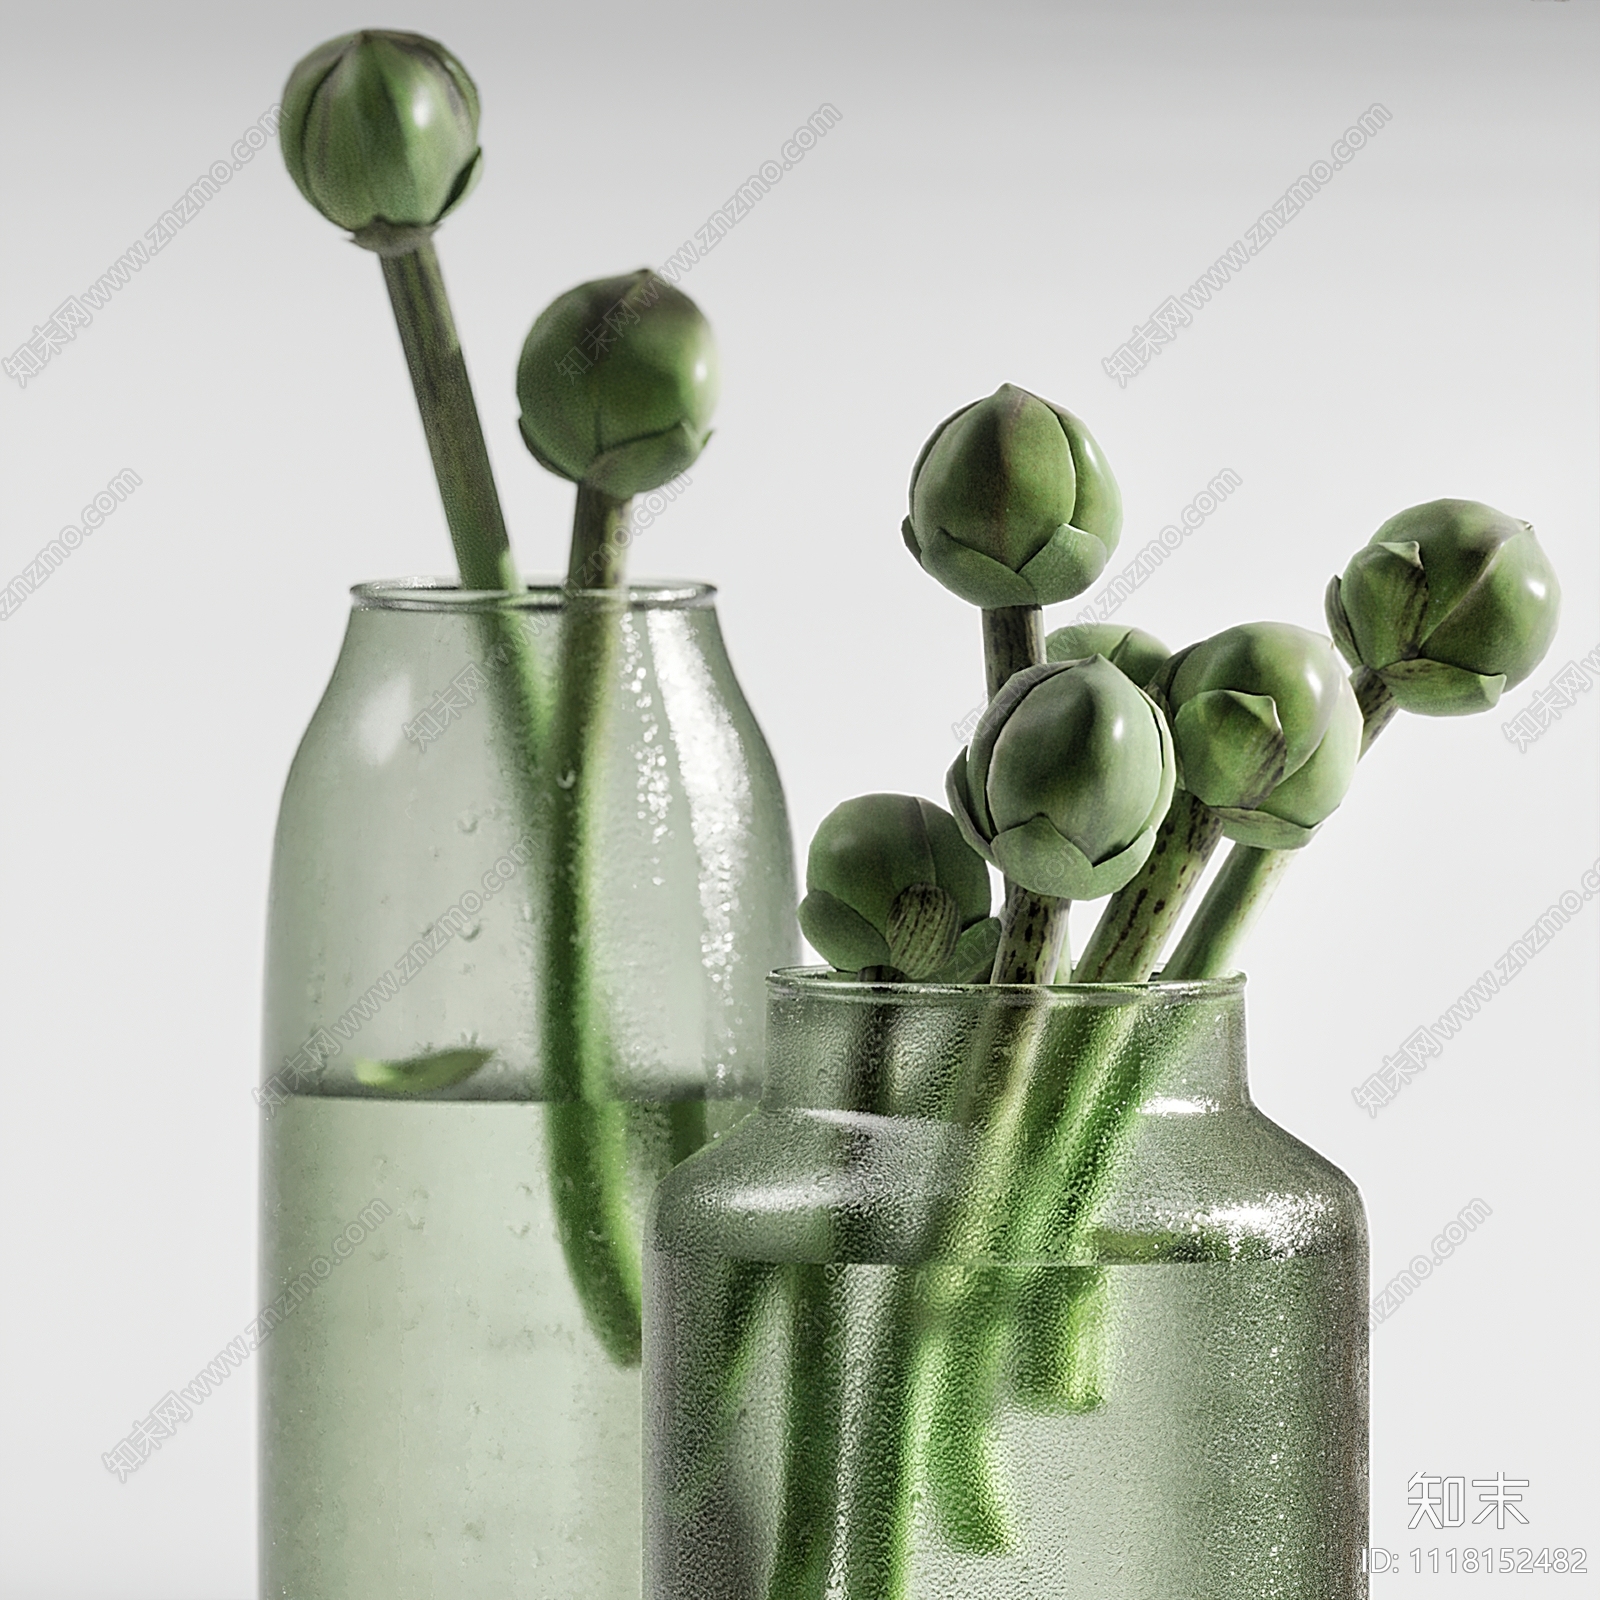 双版本    1118152482    现代绿植水生植物花瓶3d模型 ID-12033159.jpeg